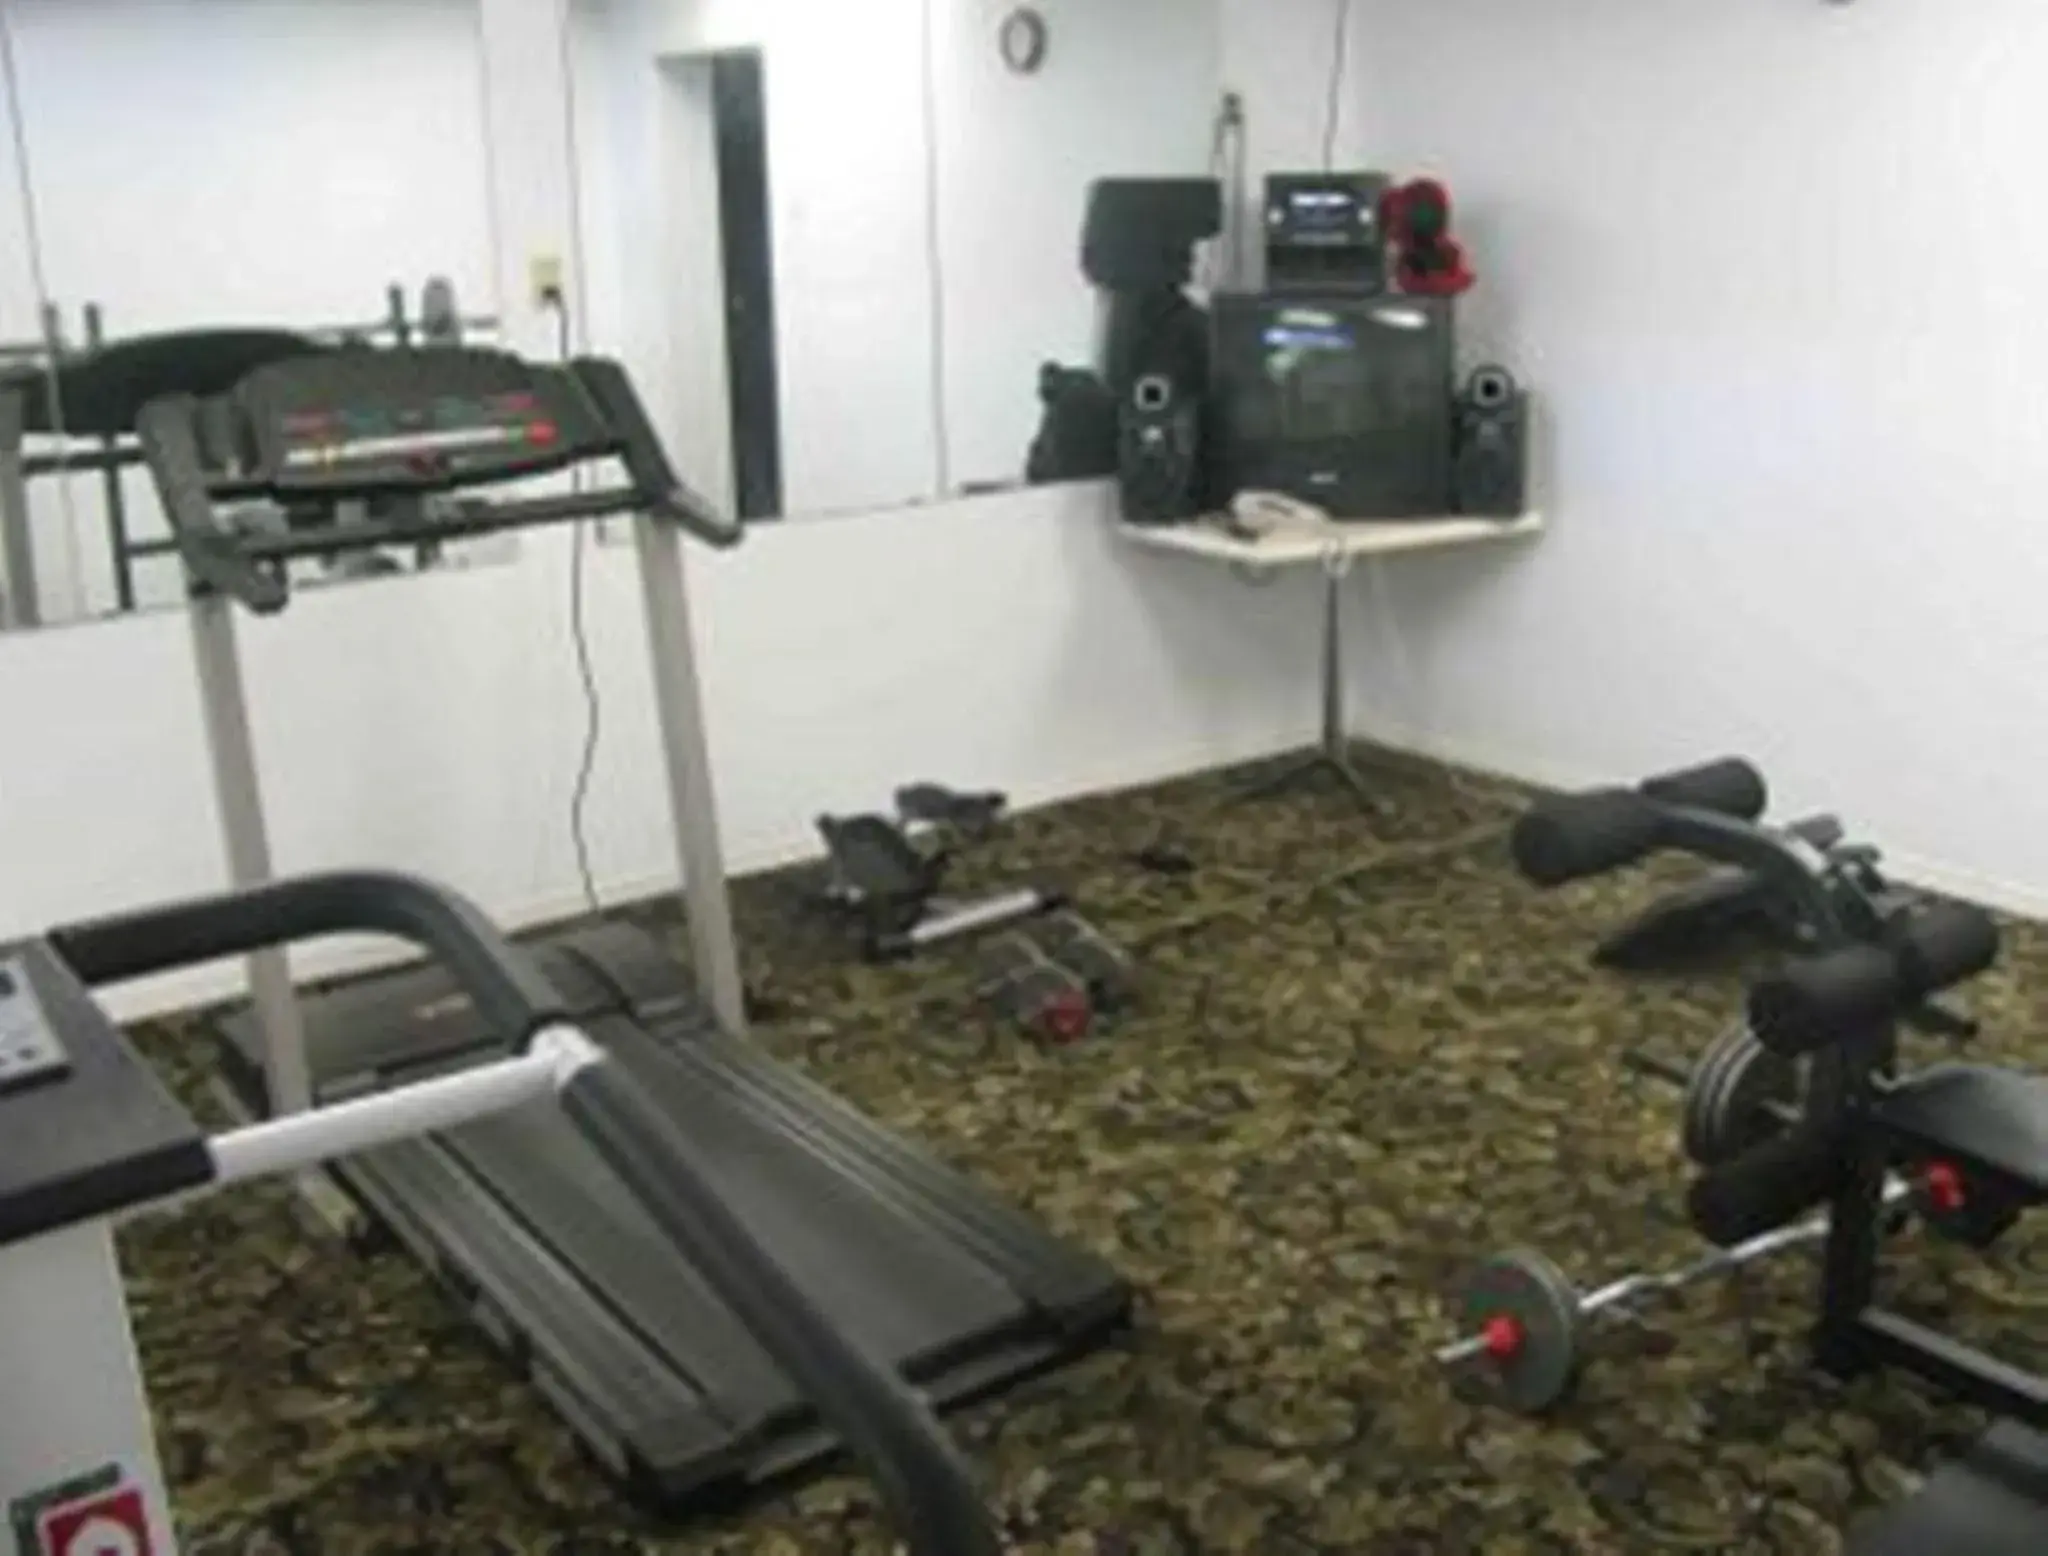 Fitness centre/facilities, Fitness Center/Facilities in MOOSEJAW INN